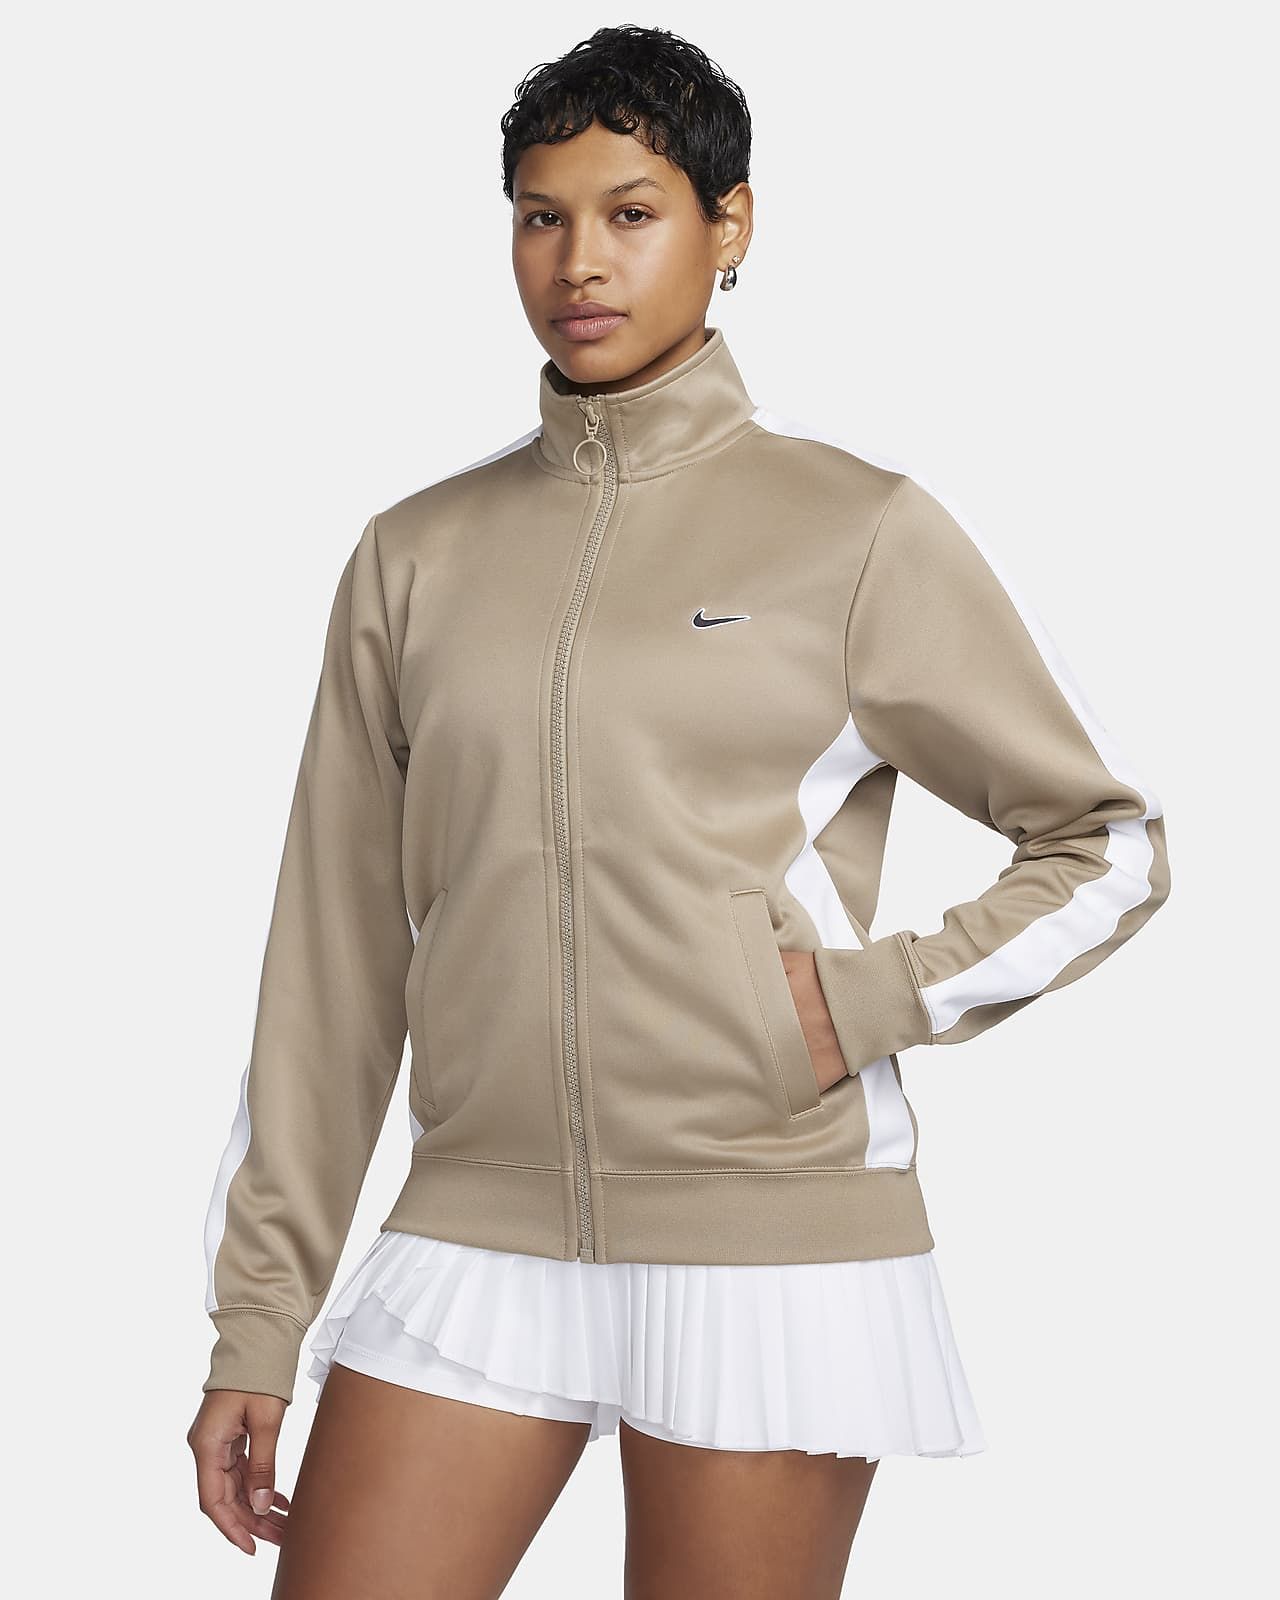 Nike Sportswear Women's Jacket. Nike.com | Nike (US)